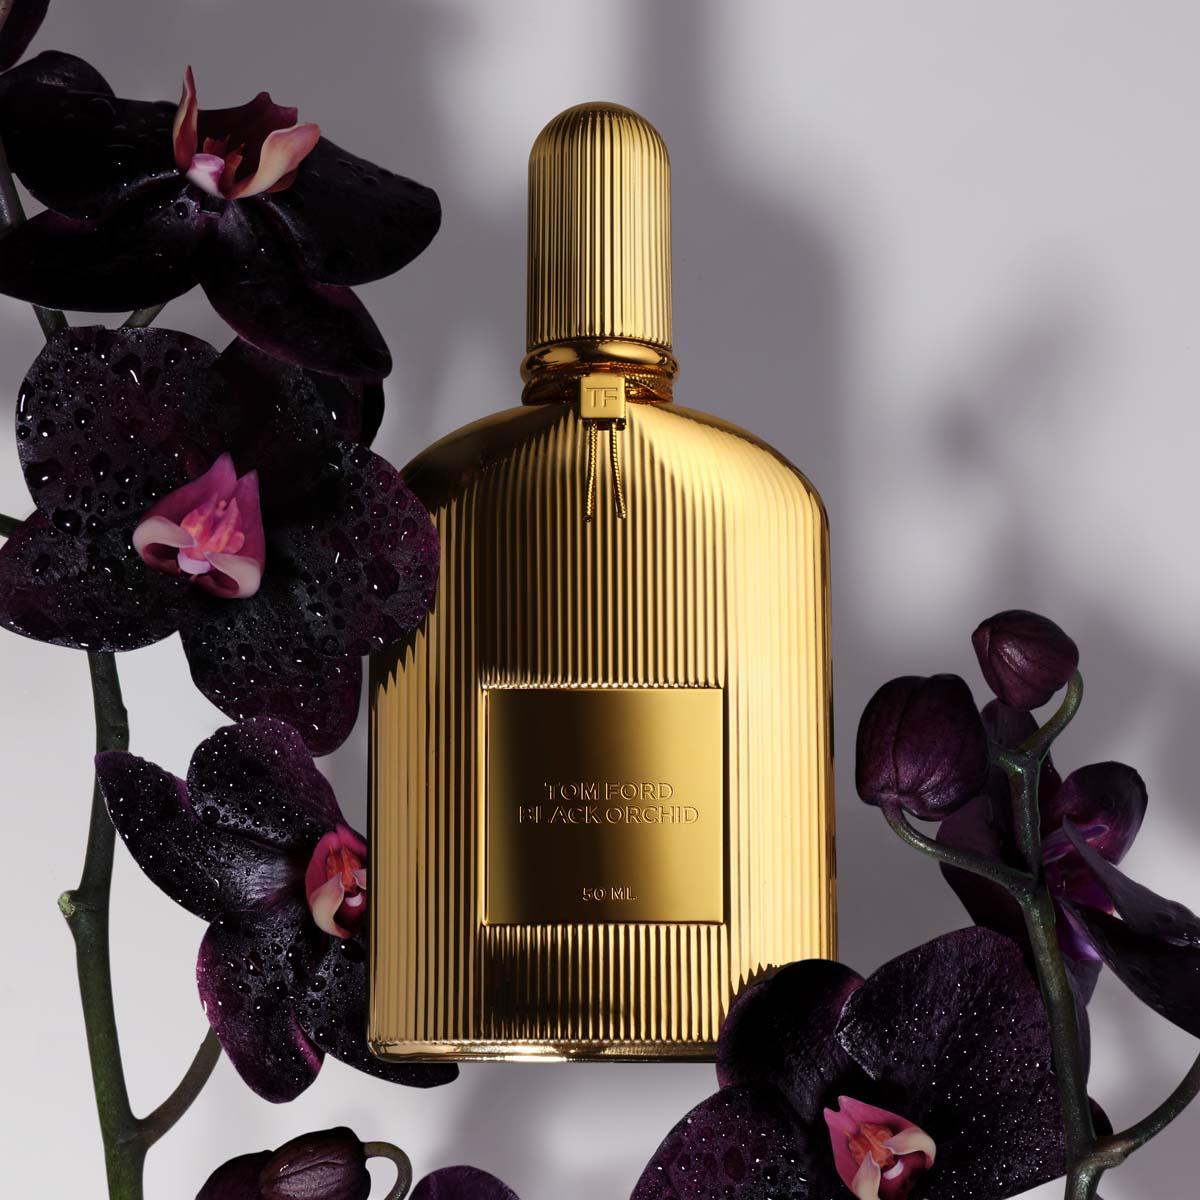 Tom Ford Black Orchid Eau de Parfum 50ml | SEPHORA UK